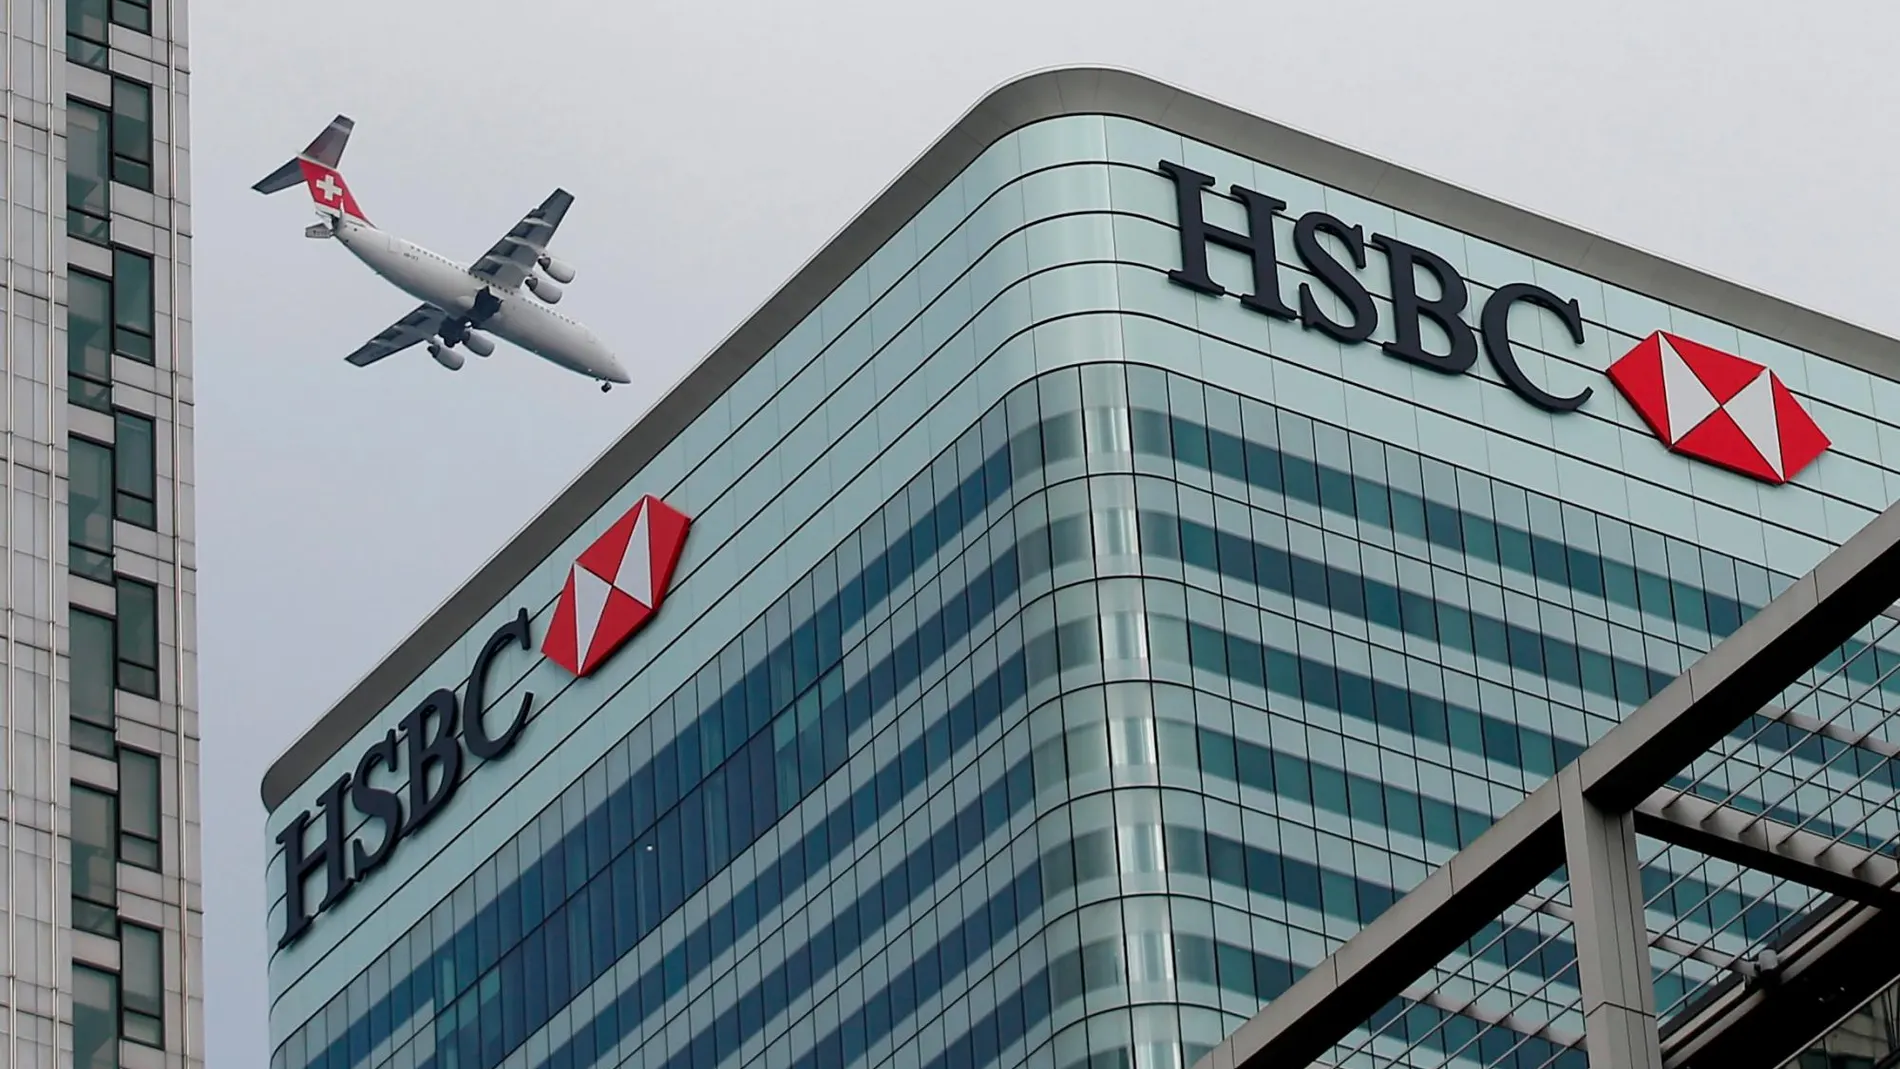 Cuarteles generales de HSBC en Canary Wharf